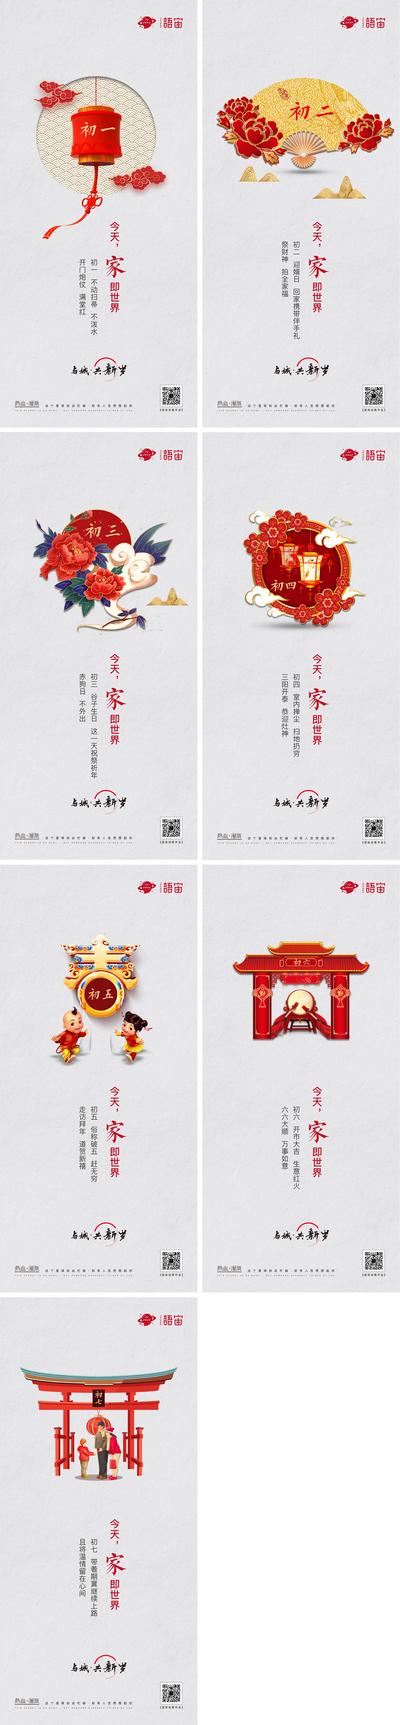 【南门网】海报 中国传统节日 房地产 春节 系列 习俗 插画 初一至初七